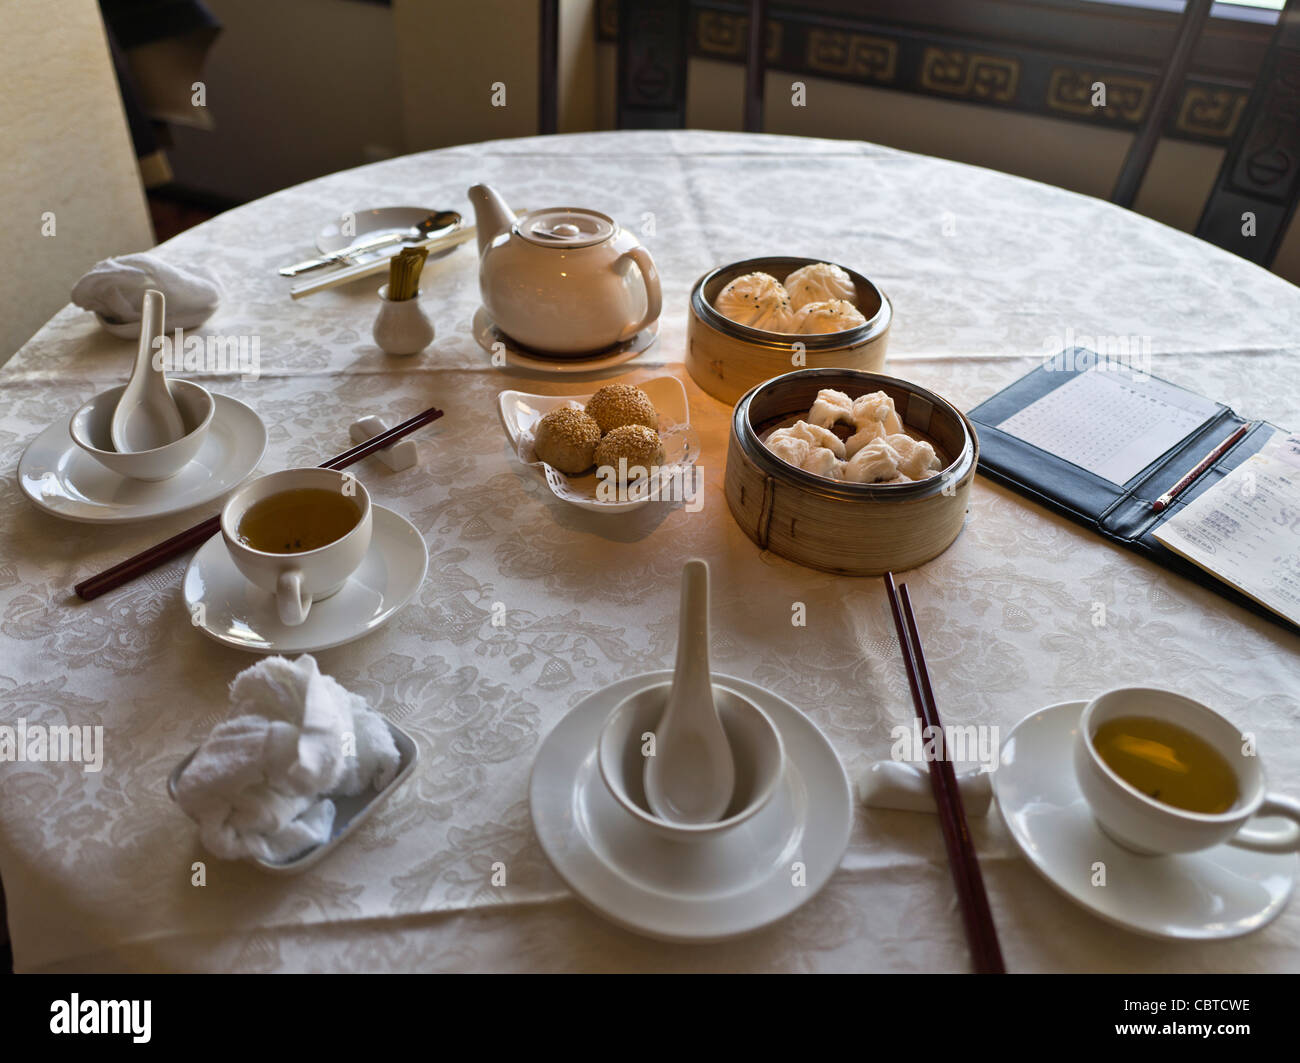 dh Jumbo Ristorante galleggiante ABERDEEN HONG KONG Dim Sum tavolo ciotole bacchette da tè cinese pranzo cucina cantonese con cibo prima colazione a vapore cinese Foto Stock